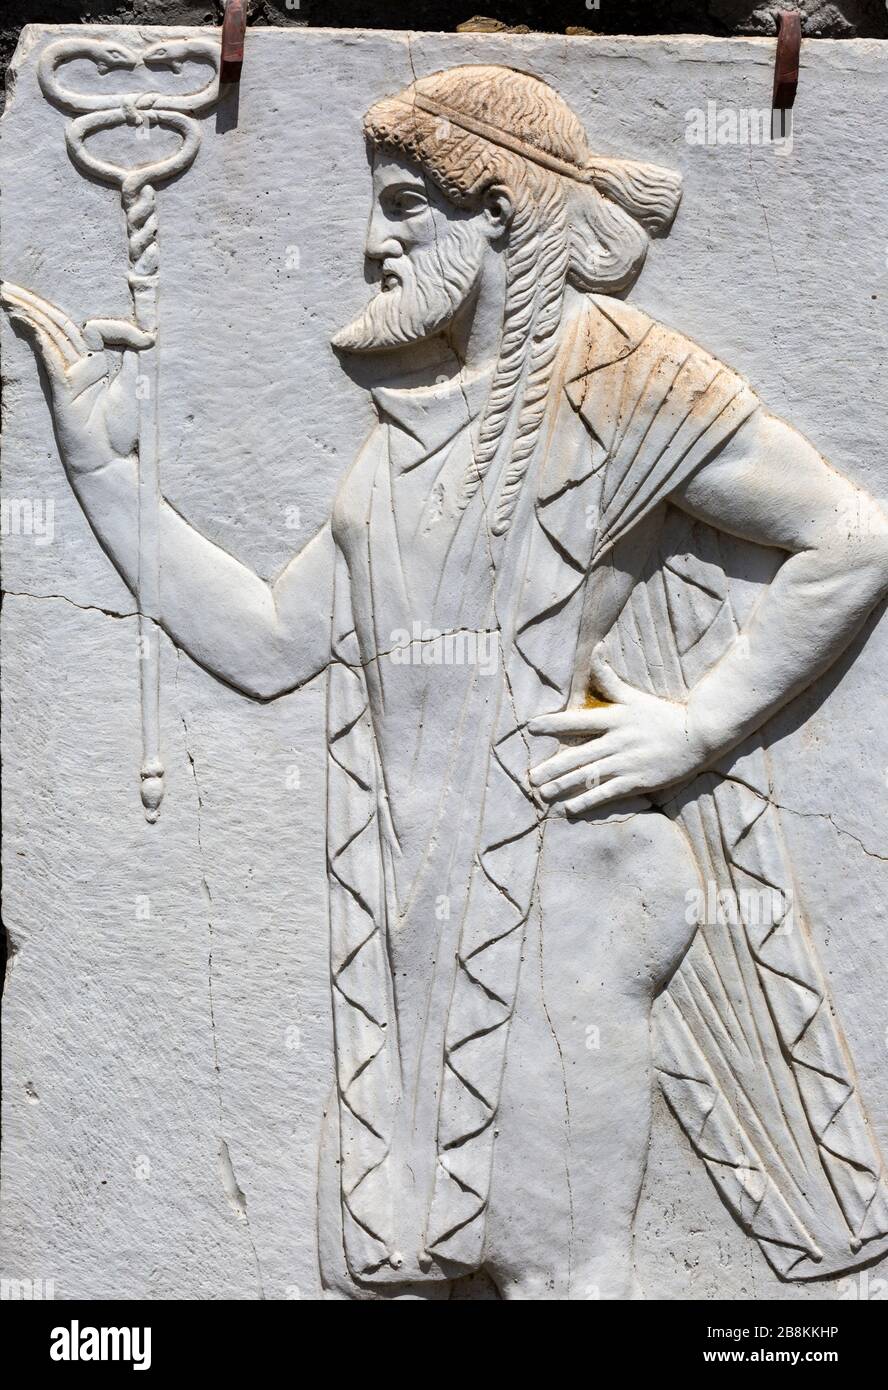 Scultura di un antico uomo di barba nella città romana di Ercolano distrutta da un'eruzione piroclastica nel 79 d.C., Campania, Italia. Foto Stock